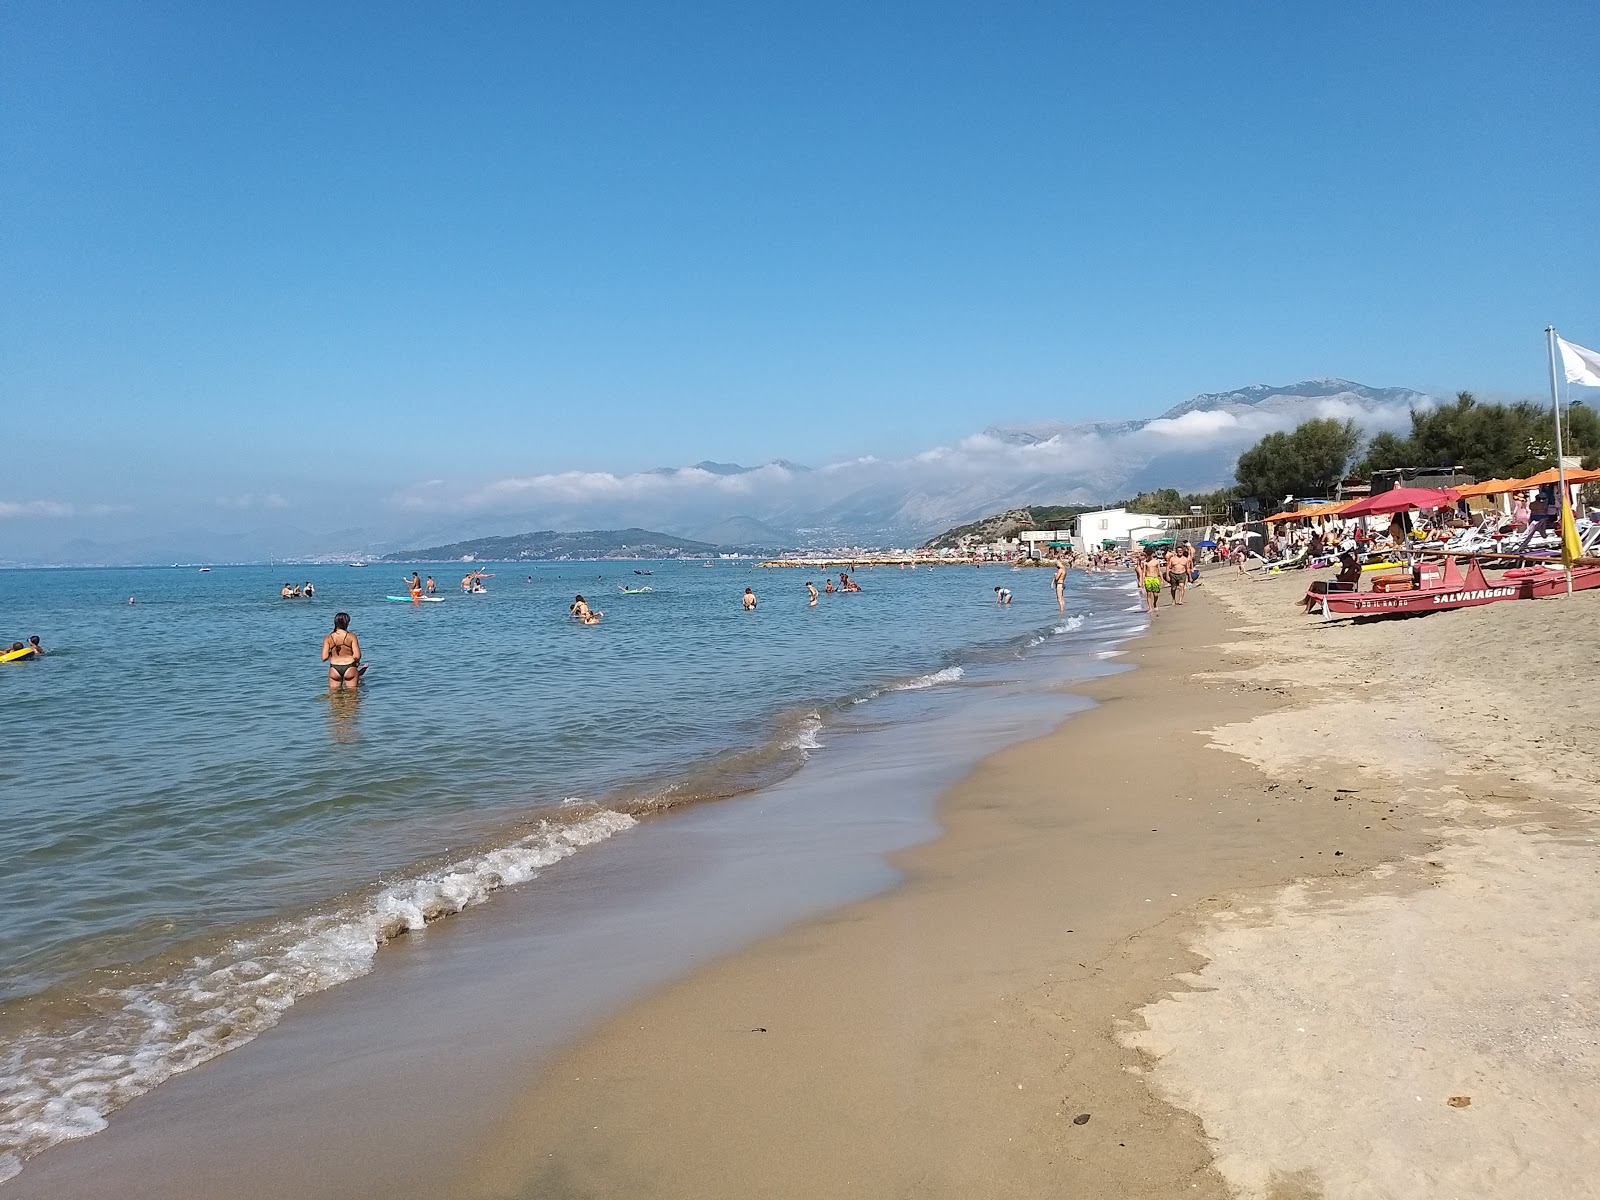 Marina di Minturno beach'in fotoğrafı kahverengi kum yüzey ile